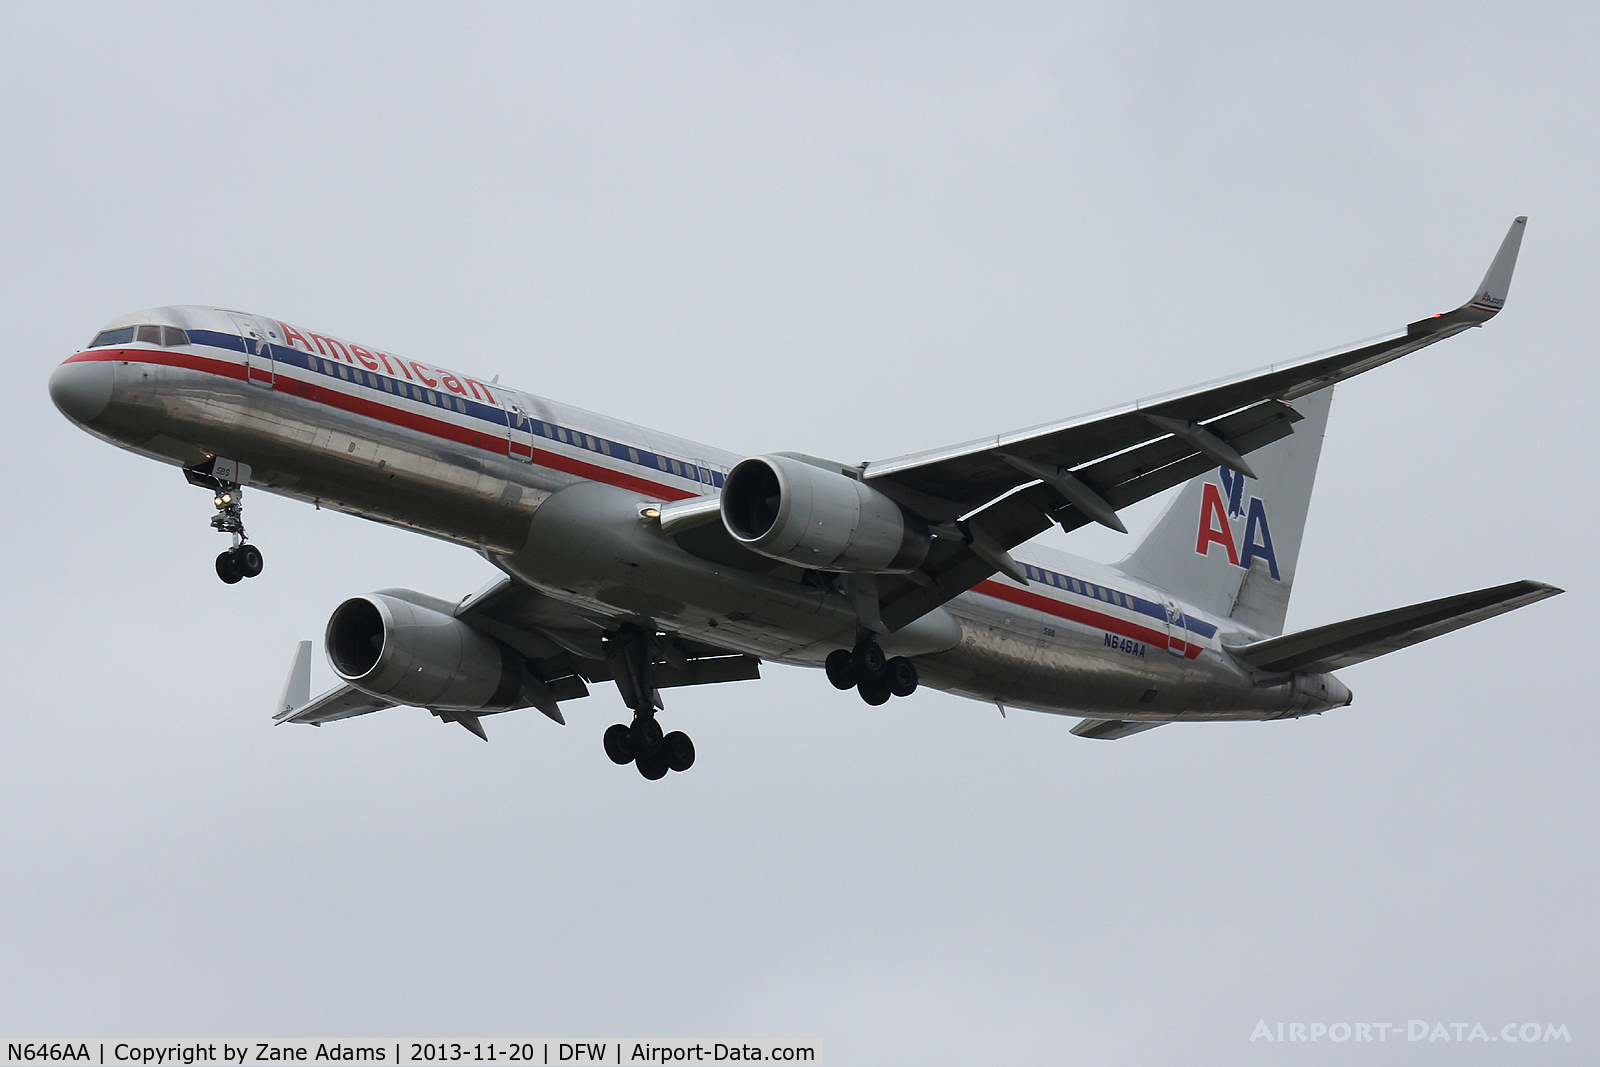 N646AA, 1991 Boeing 757-223 C/N 24604, American Airlines at DFW Airport